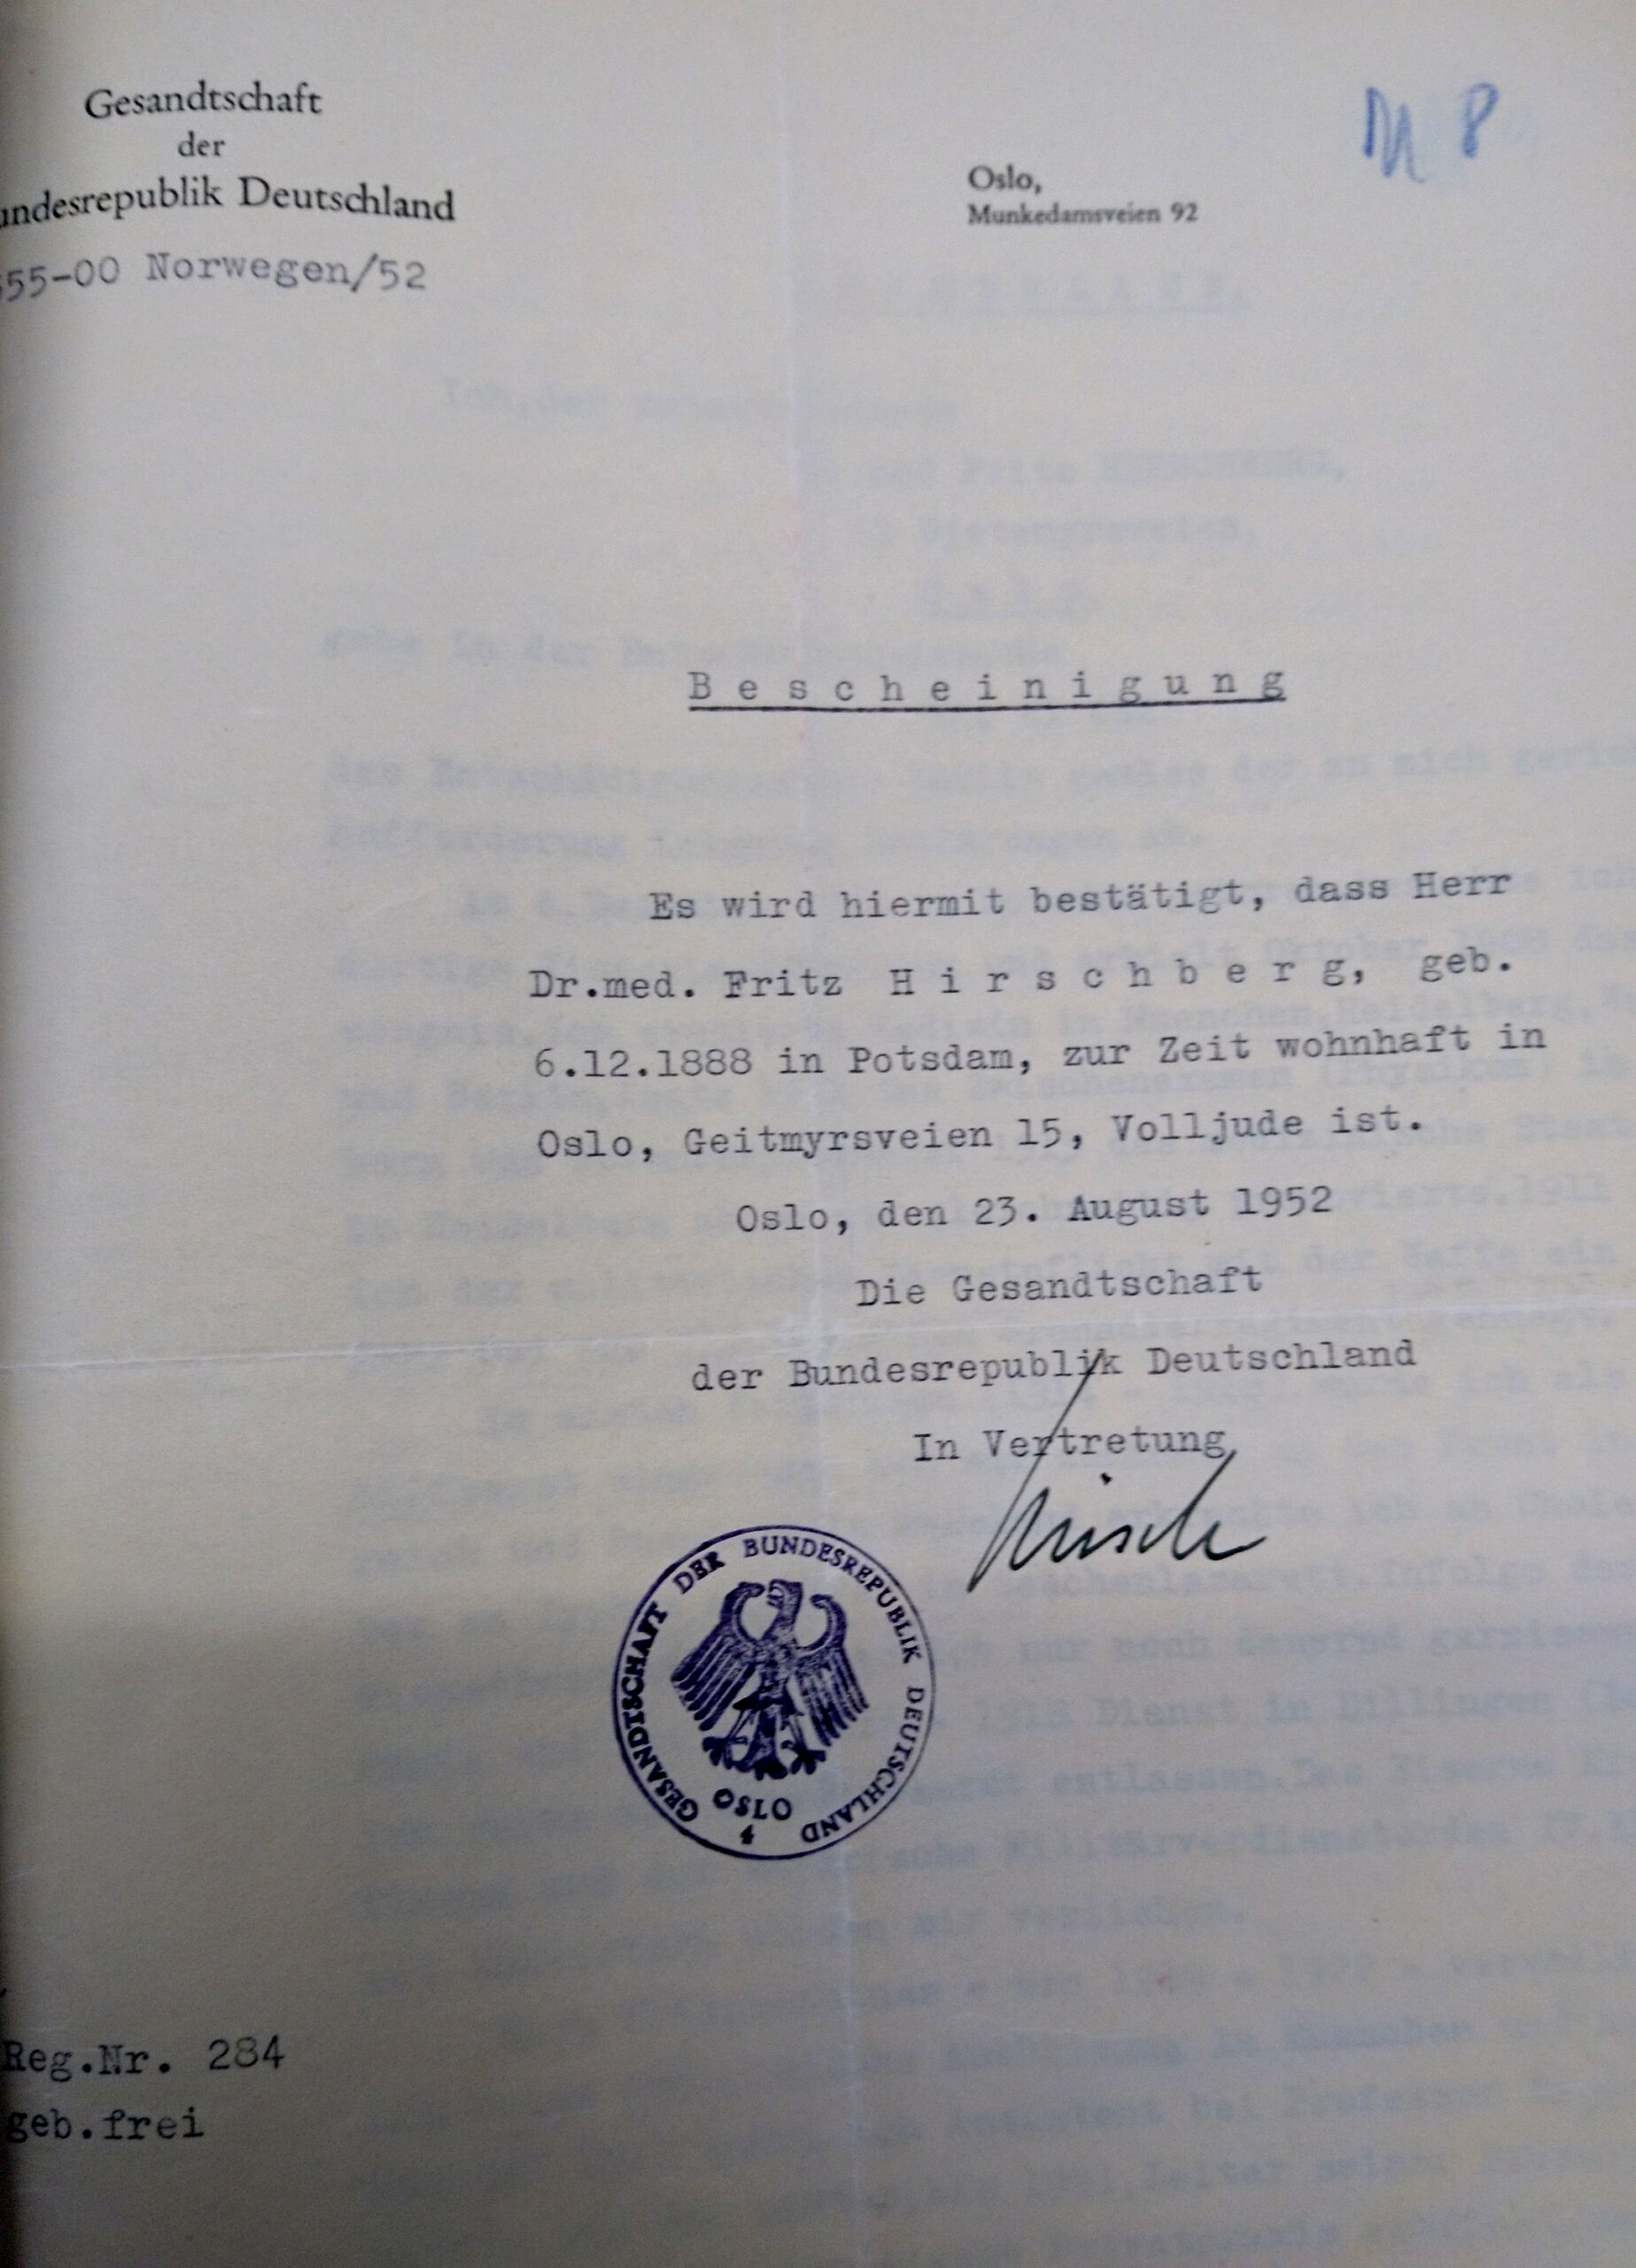 Bescheinung der Gesandtschaft der Bundesrepublik Deutschland in Norwegen, 1952, Quelle:
Entschädigungsbehörde Berlin, Entschädigungsakte
